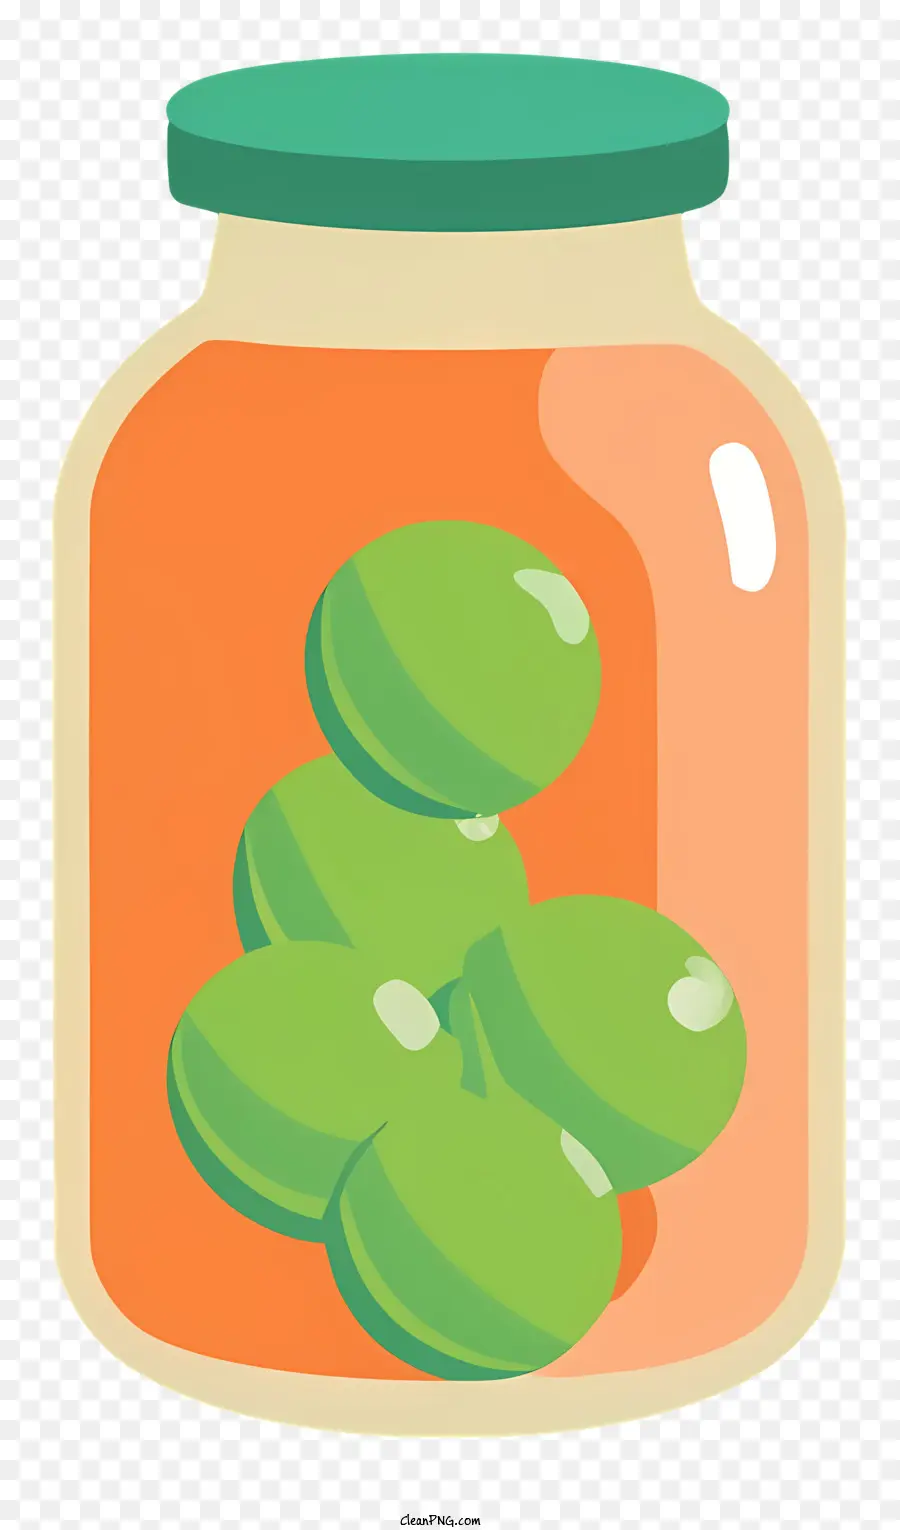 Cartoon Green Olives Glasglasdeckel mit vier Oliven - Glasglas mit runden grünen Oliven gefüllt